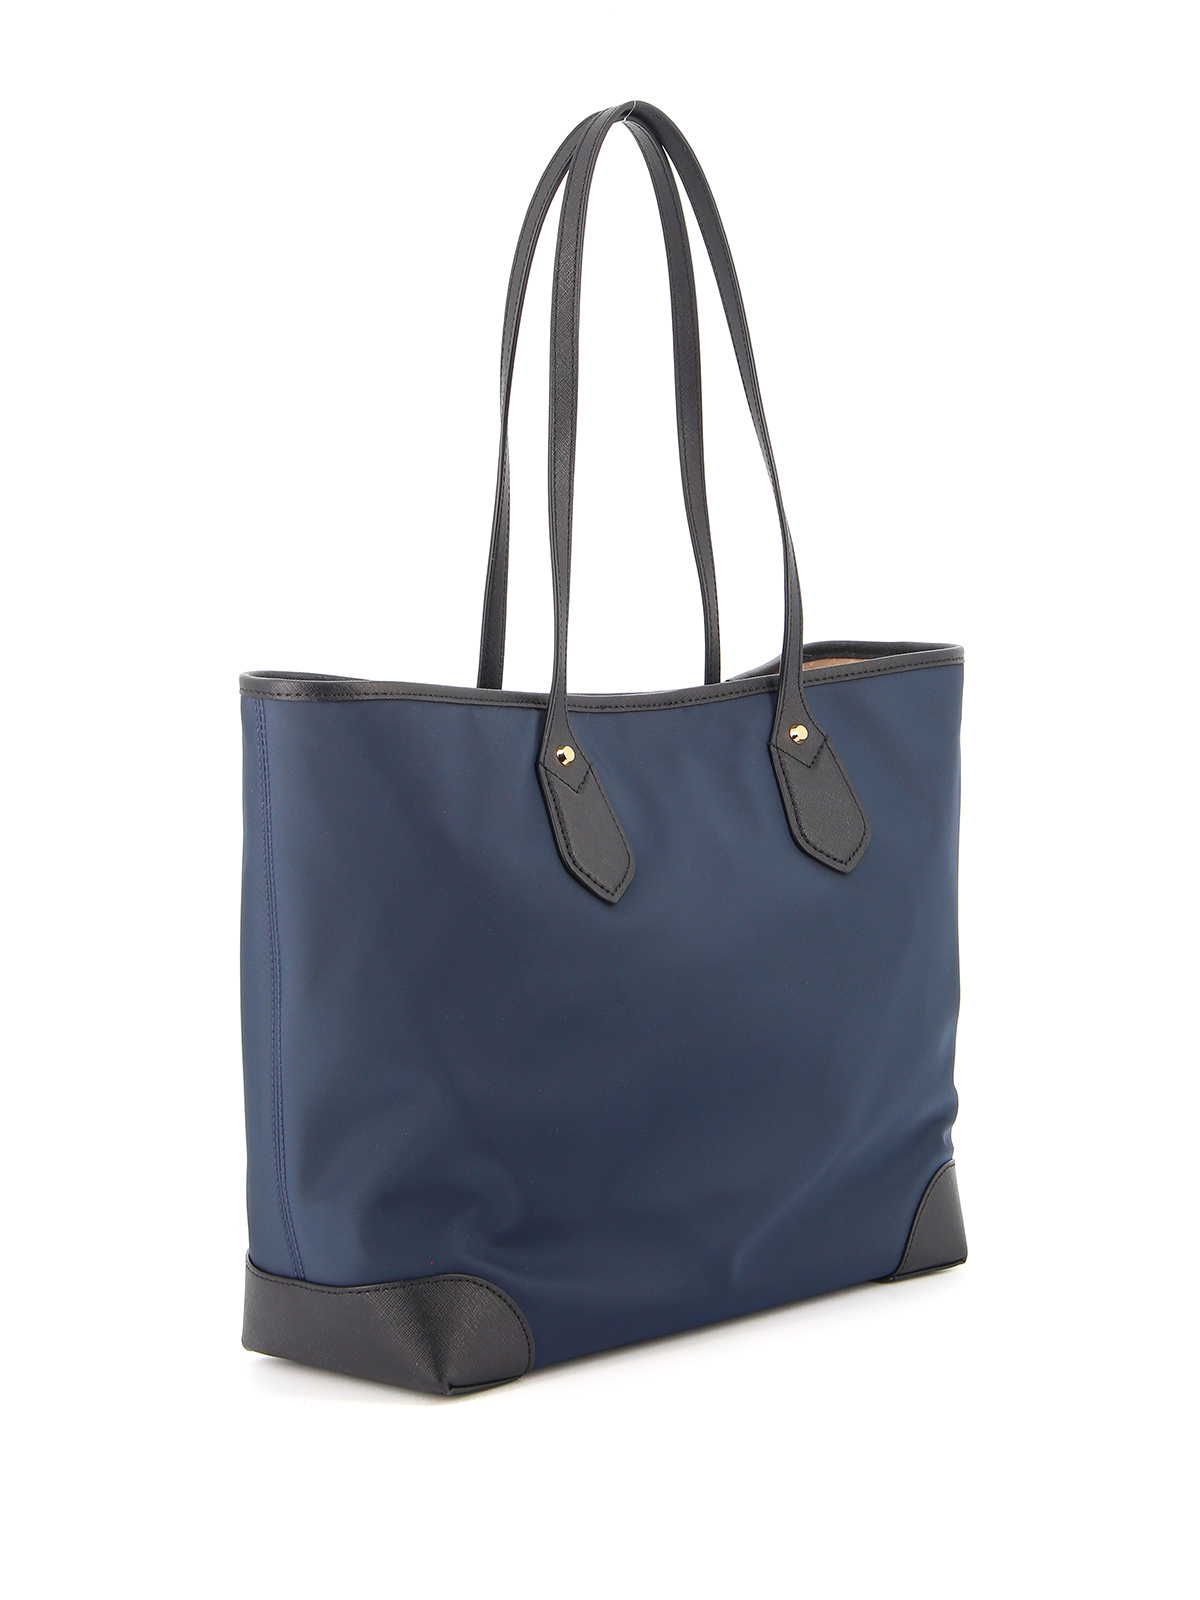 Totes bags Michael Kors - Eva large nylon blue tote bag - 30H9GV0T3C407